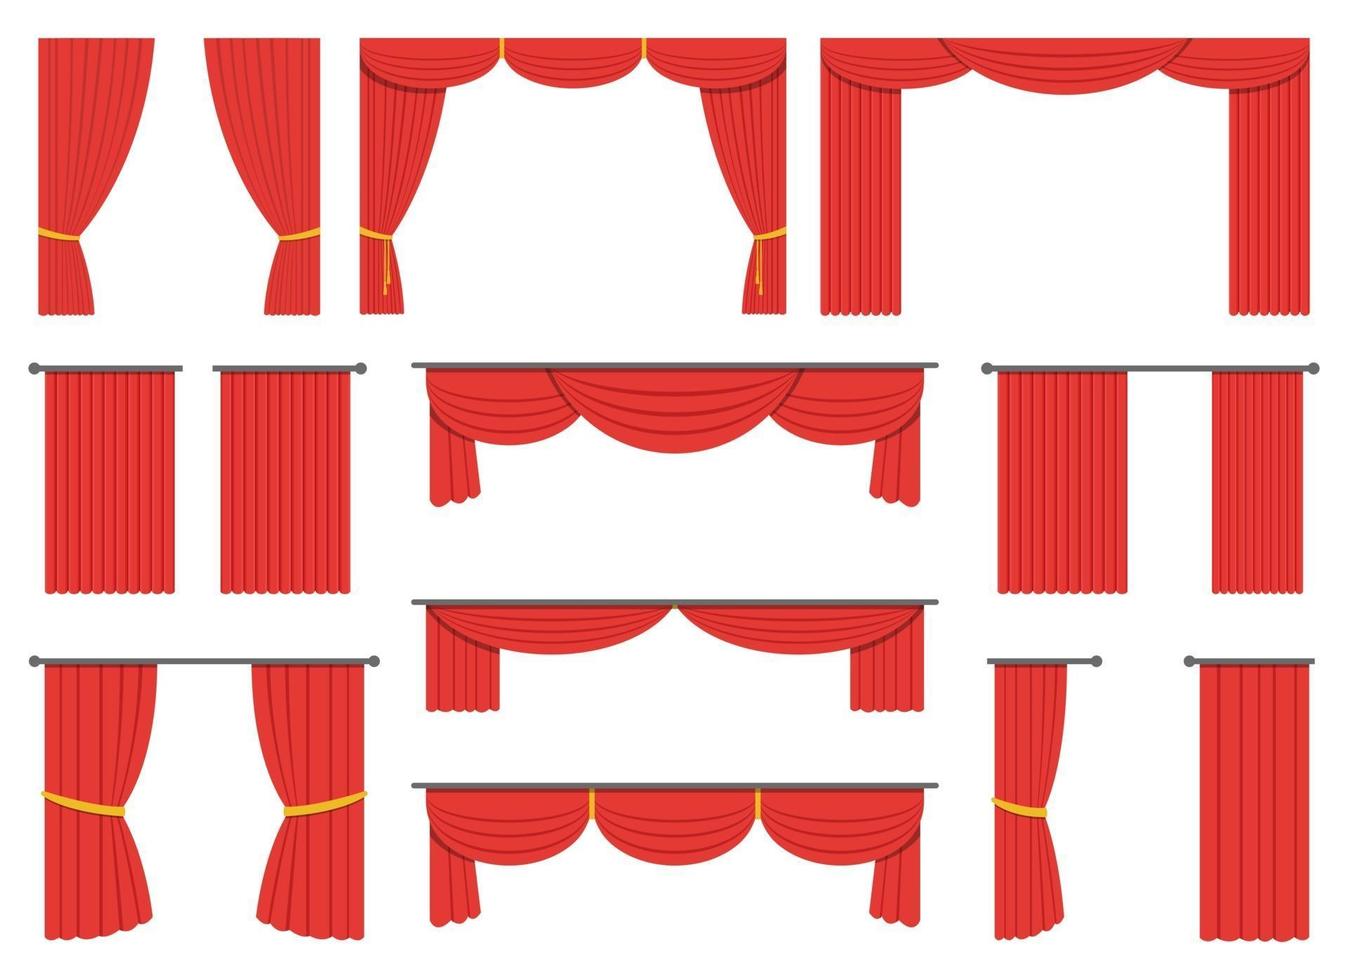 Theatervorhangvektor-Entwurfsillustrationssatz lokalisiert auf weißem Hintergrund vektor